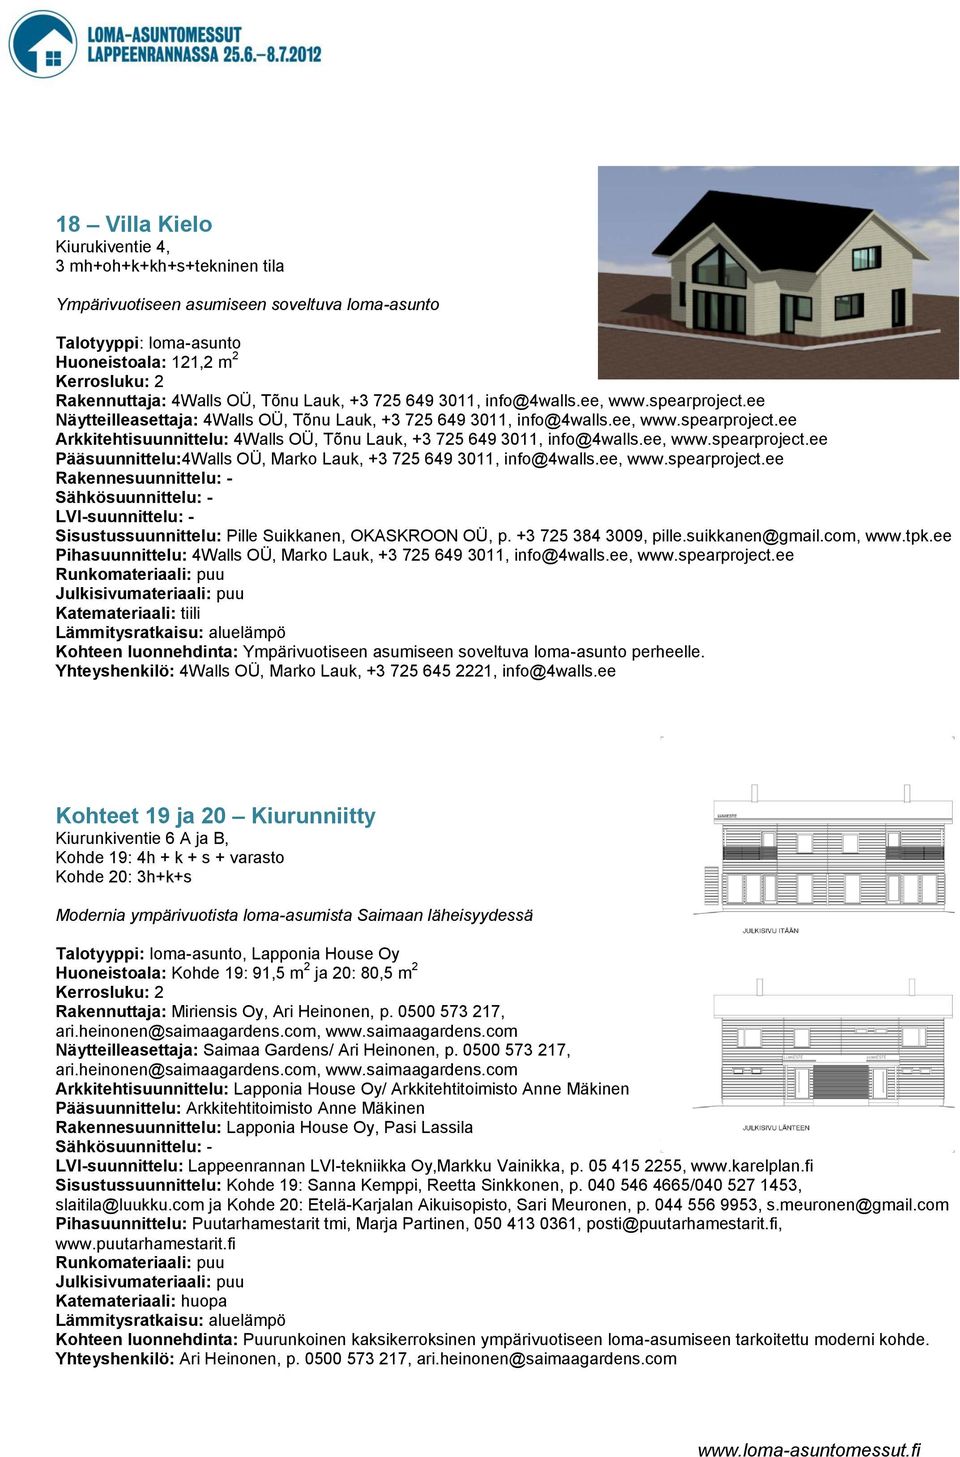 ee, www.spearproject.ee Pääsuunnittelu:4Walls OÜ, Marko Lauk, +3 725 649 3011, info@4walls.ee, www.spearproject.ee Rakennesuunnittelu: - Sähkösuunnittelu: - LVI-suunnittelu: - Sisustussuunnittelu: Pille Suikkanen, OKASKROON OÜ, p.